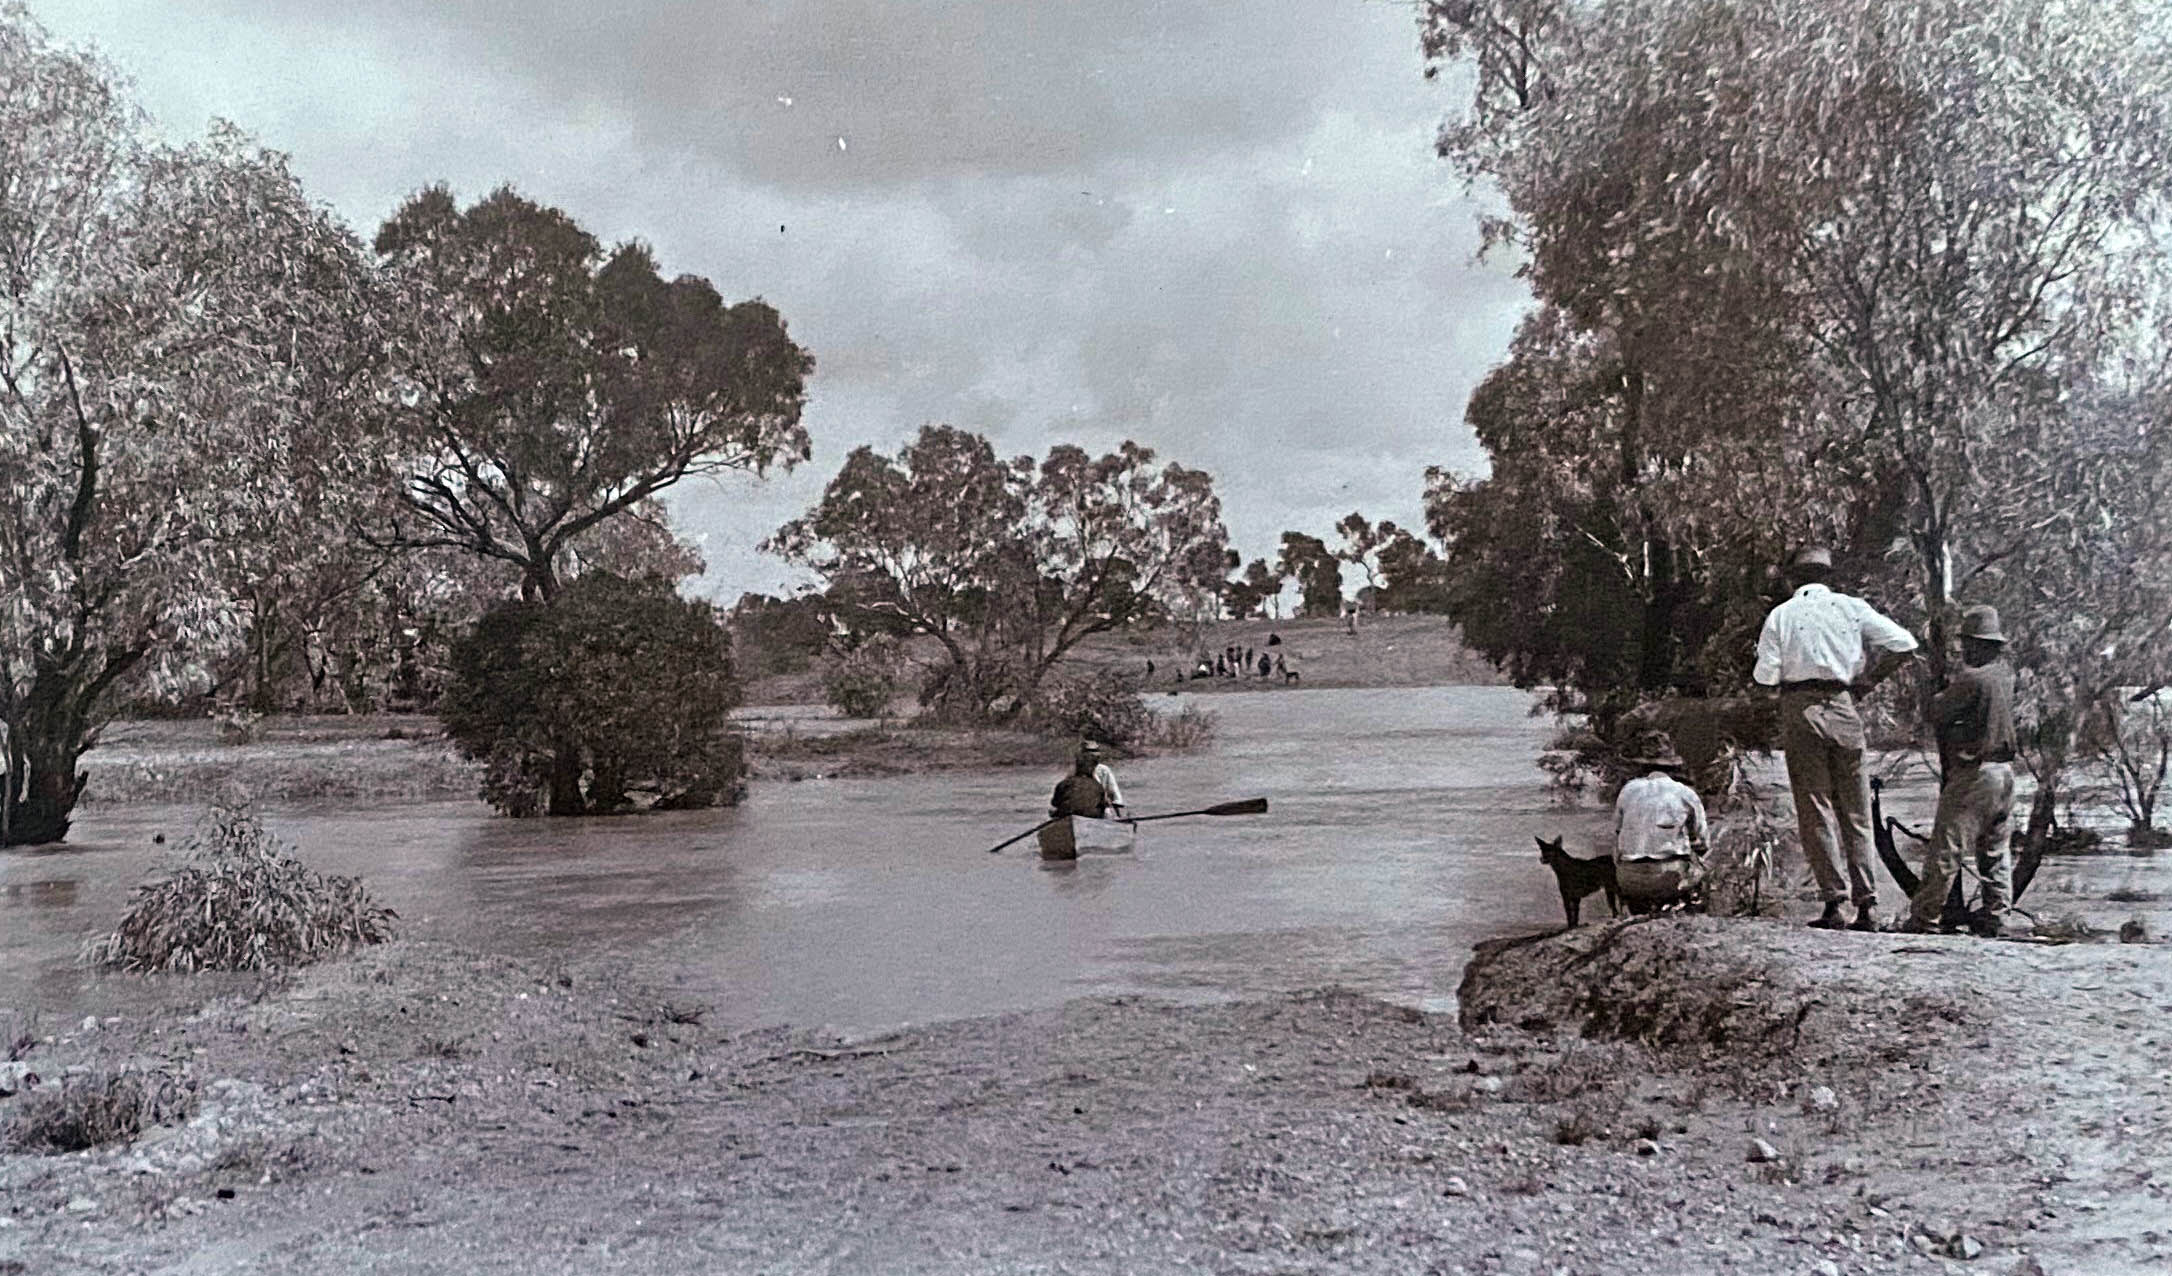 Mistake Creek in flood, Bladensburg Station, Queensland, undated (160-338).